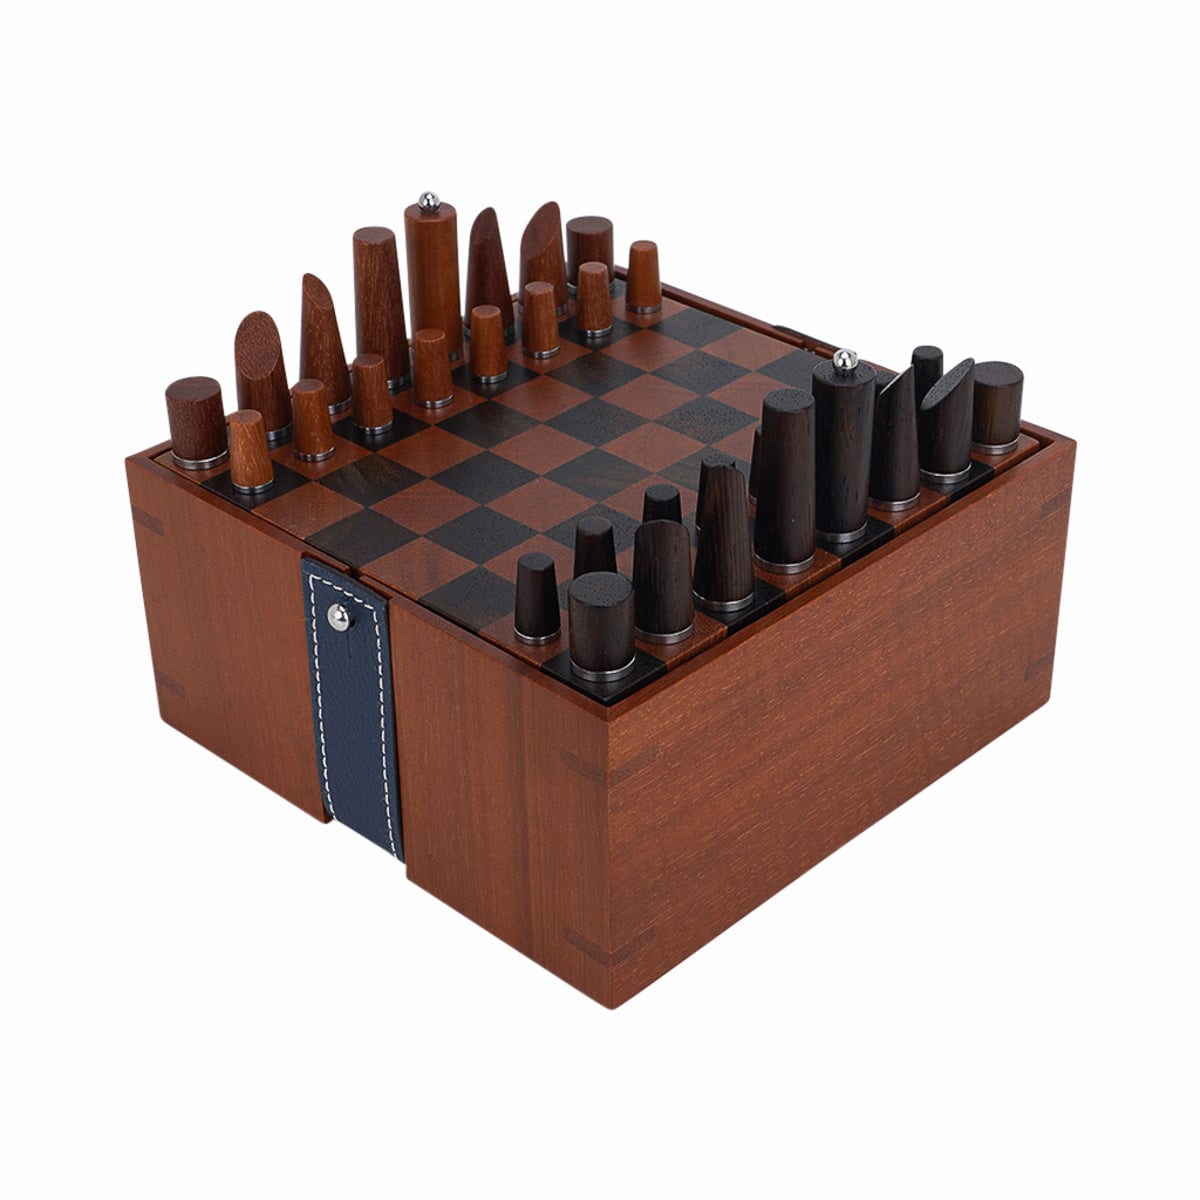 Hermes Mini Samarcande Chess Set Let's Play!